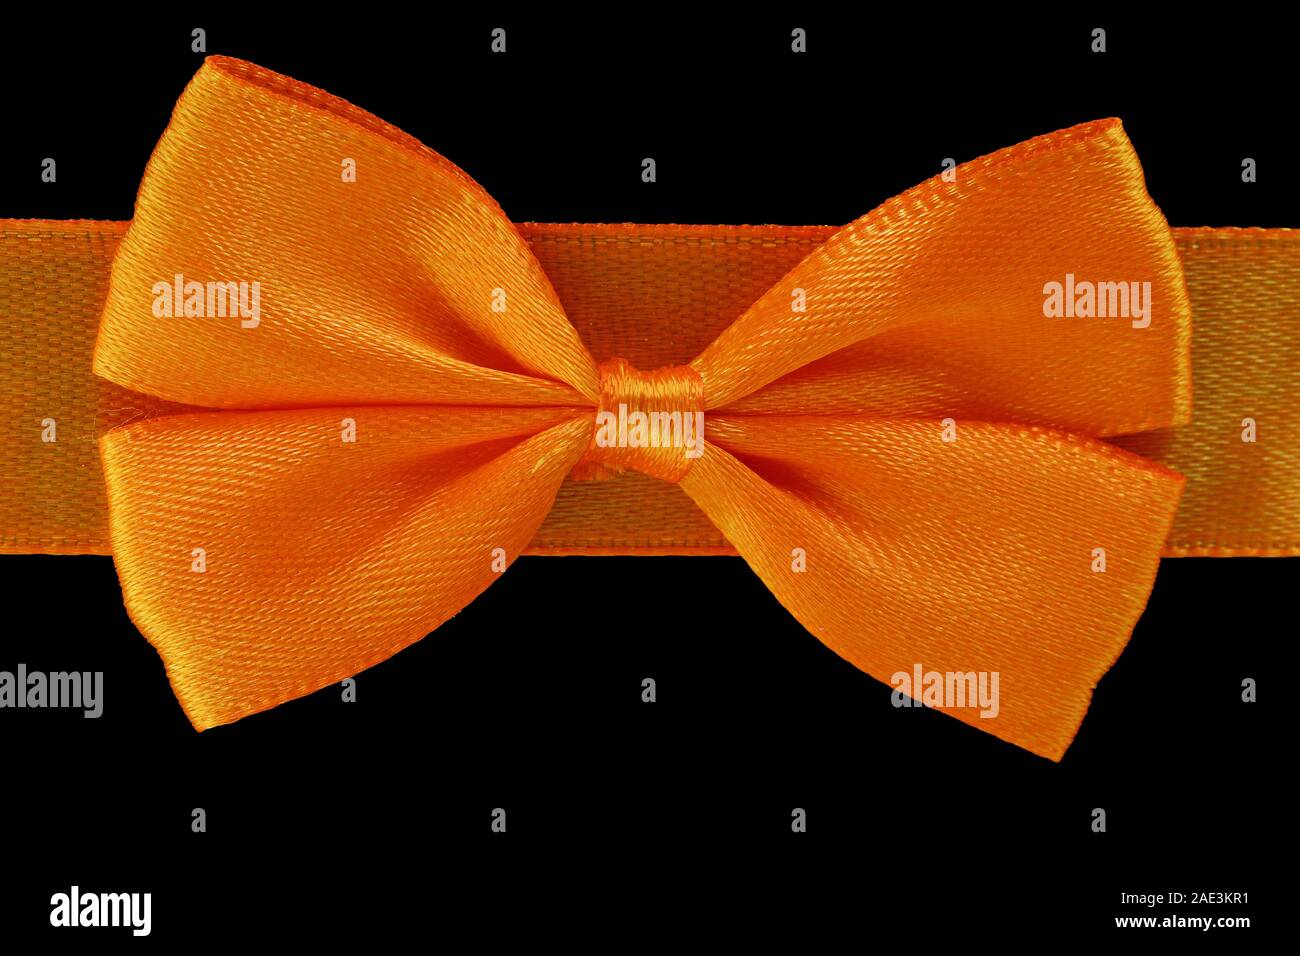 close up orange bow isolated on black background Stock Photo